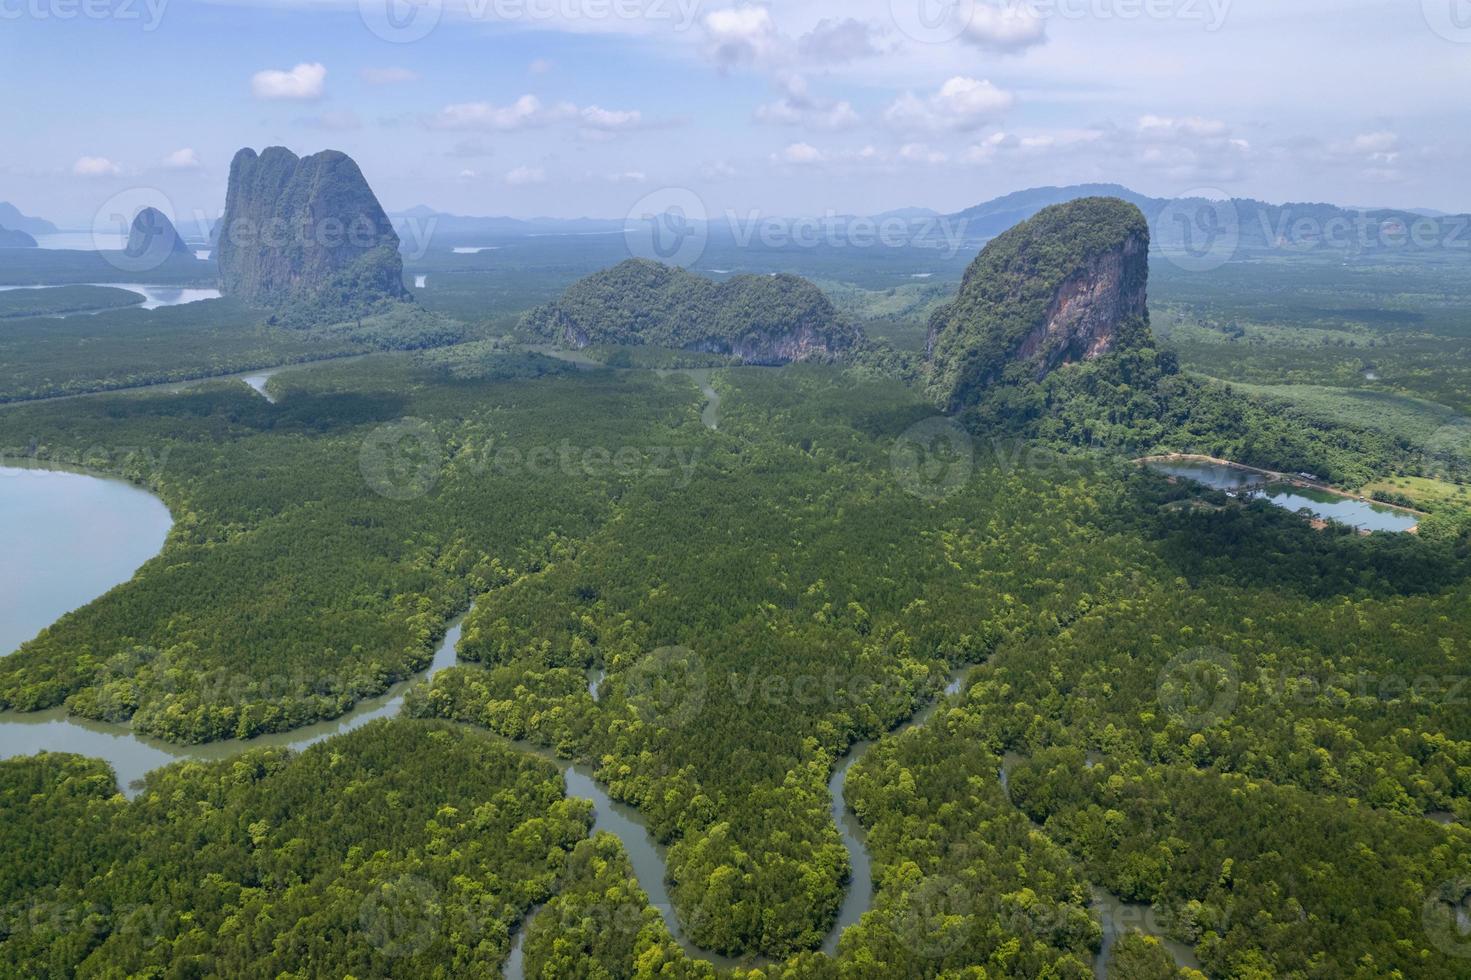 incroyable forêt de mangrove abondante vue aérienne des arbres forestiers écosystème de la forêt tropicale et environnement sain texture de fond des arbres verts forêt haut vers le bas vue en grand angle photo